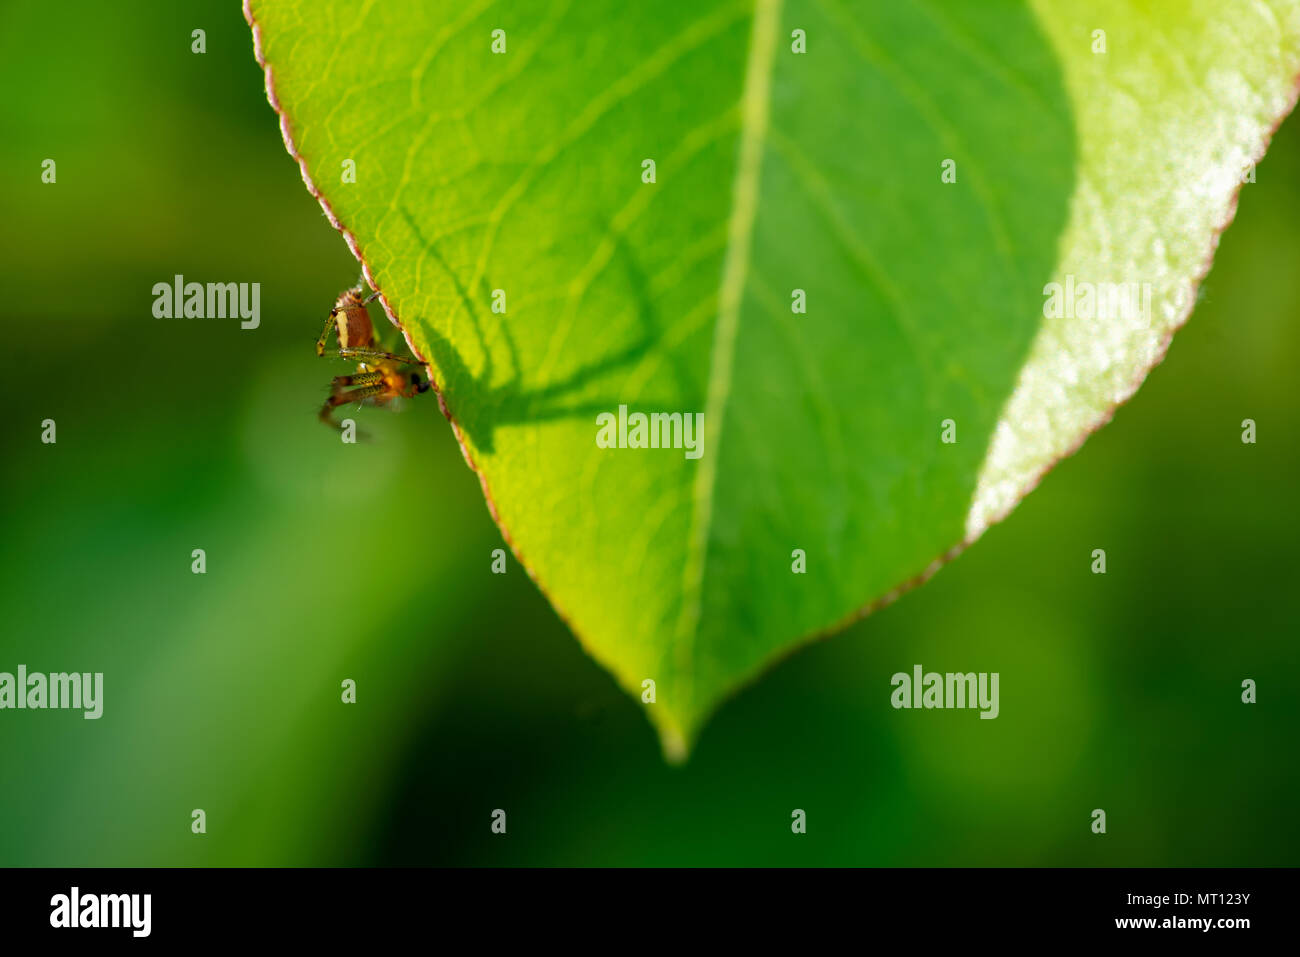 Eine Spinne auf einem grünen Blatt - symbolisiert Arachnophobia. Stockfoto